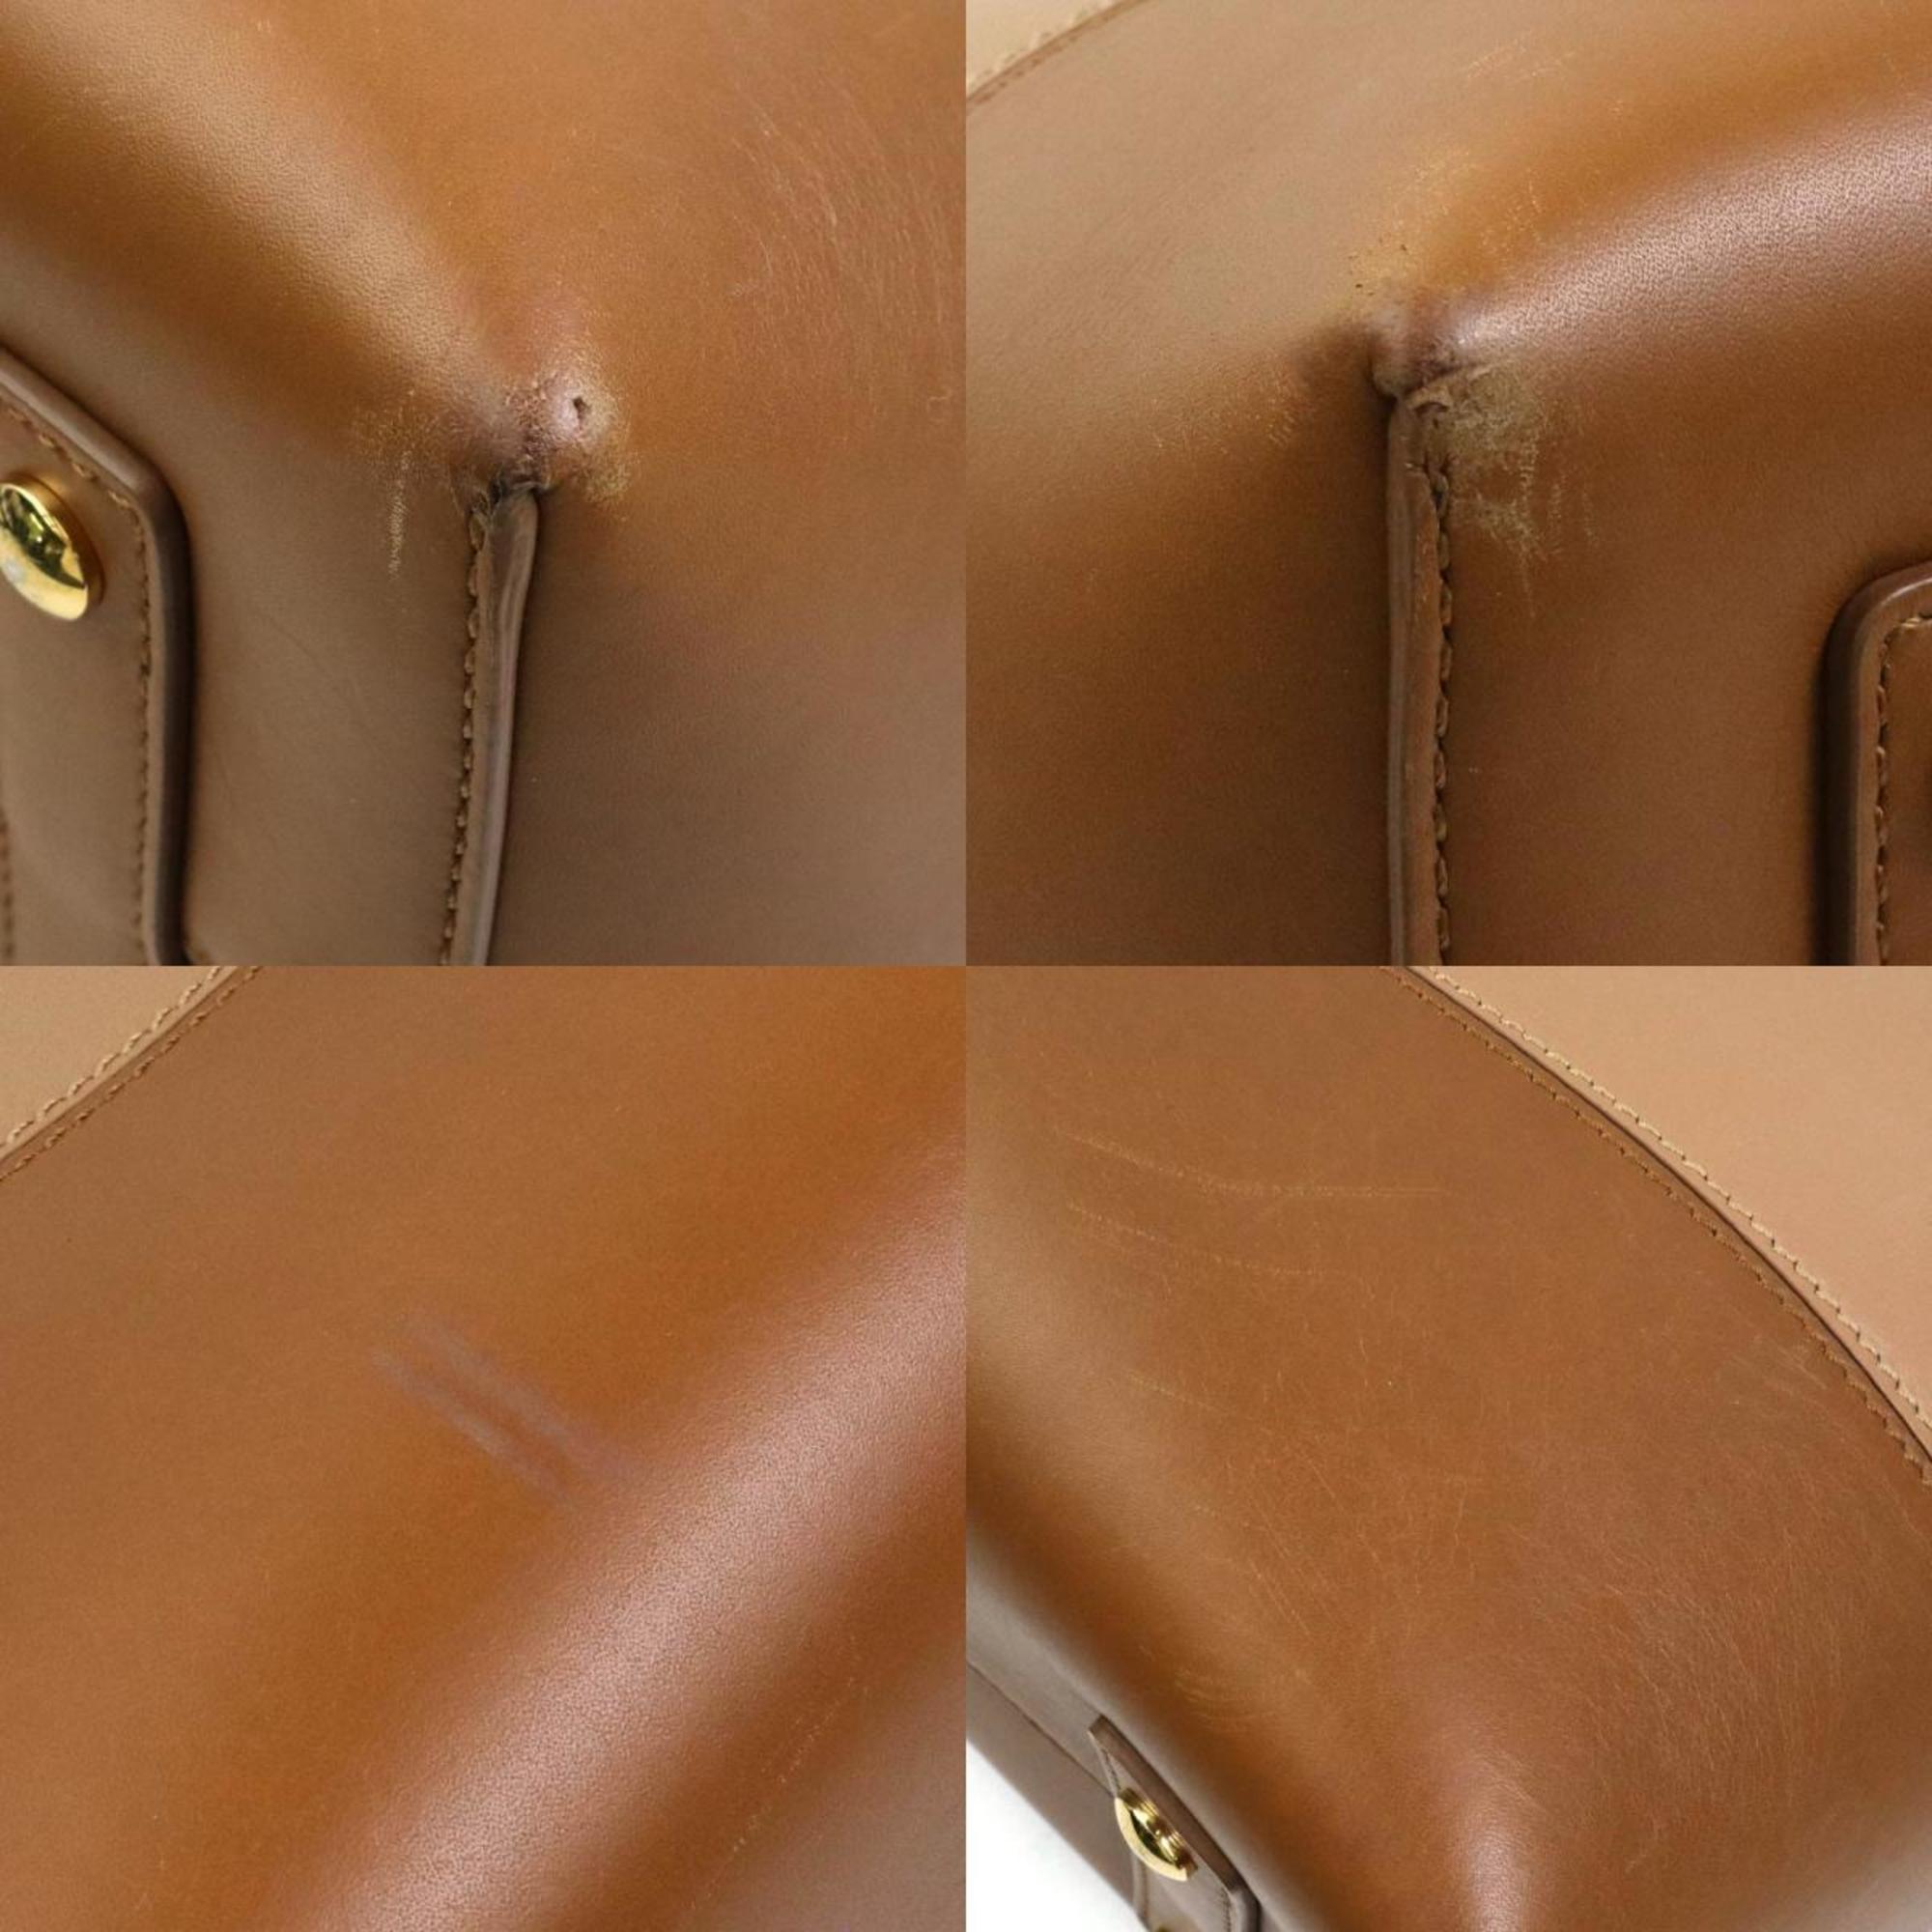 Burberry handbag shoulder bag leather brown ladies h30312g